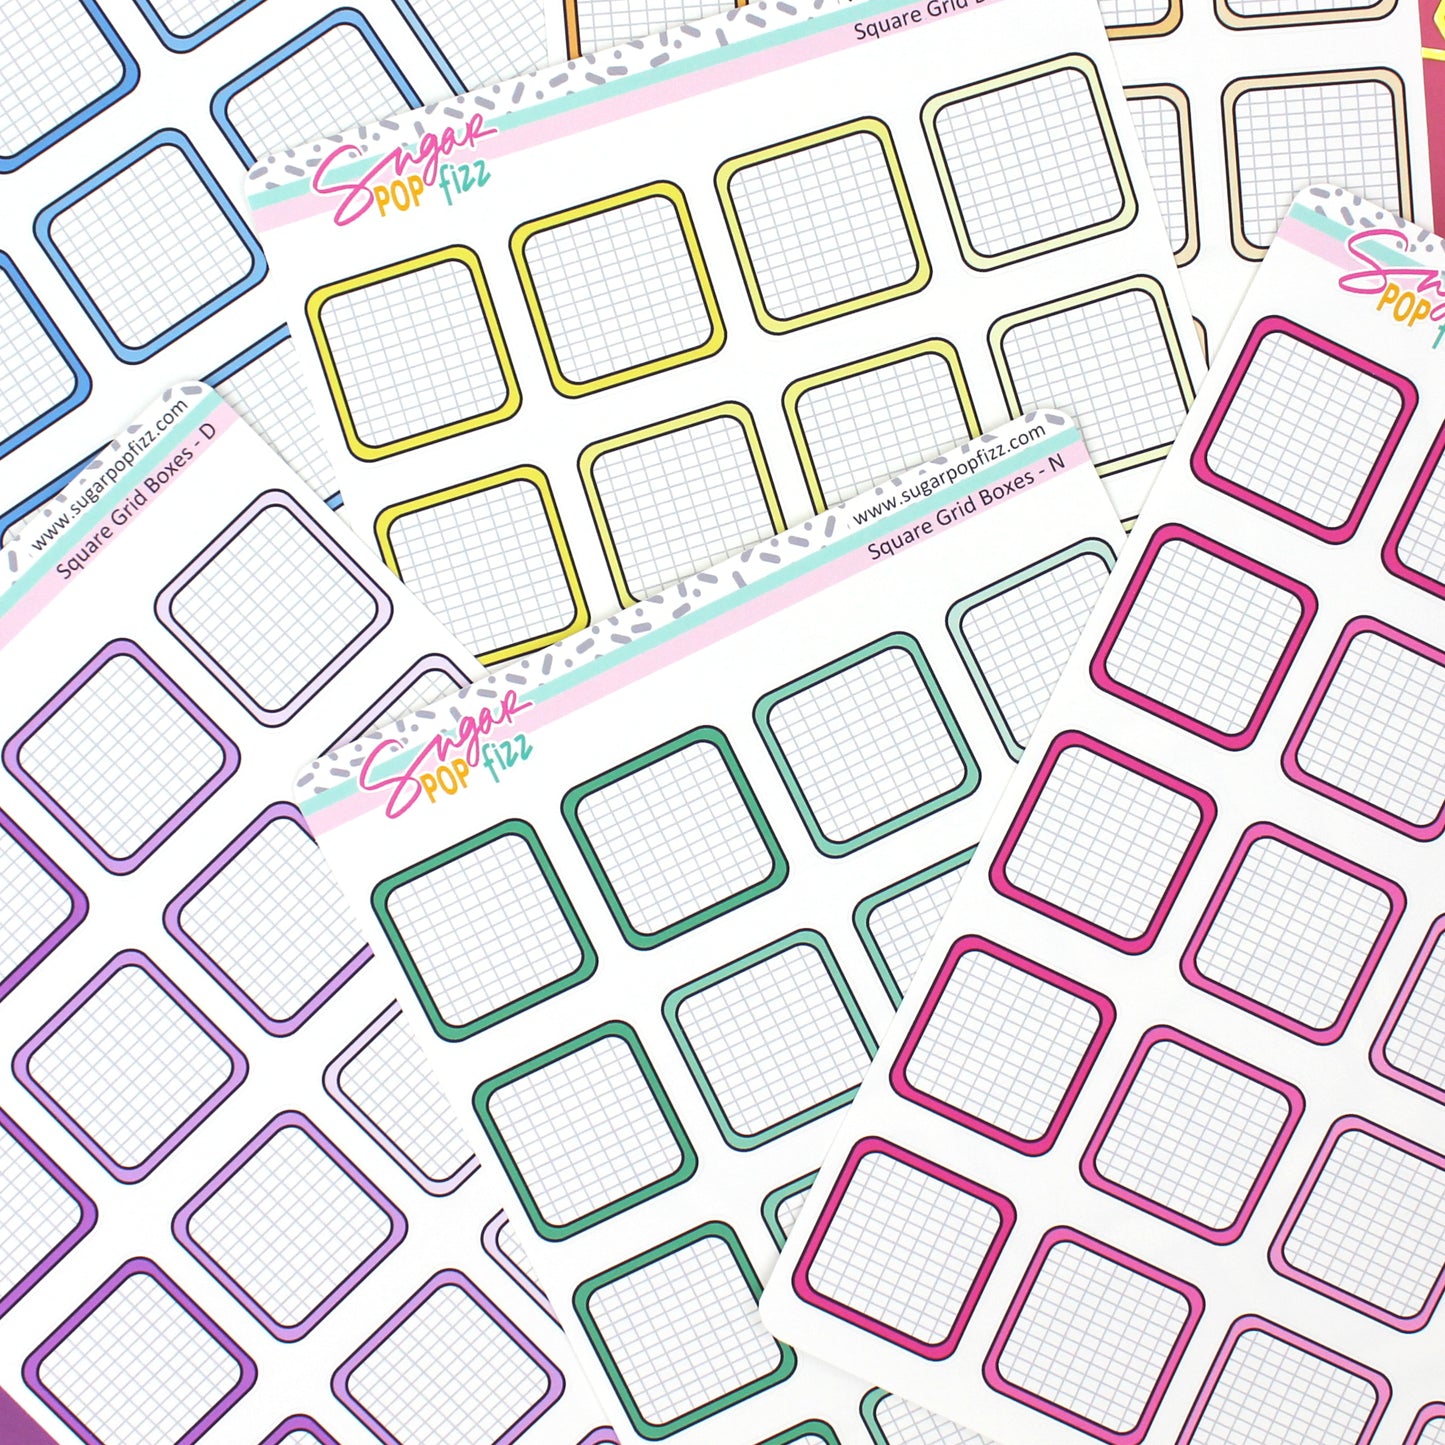 Square Grid Boxes - 24 color options